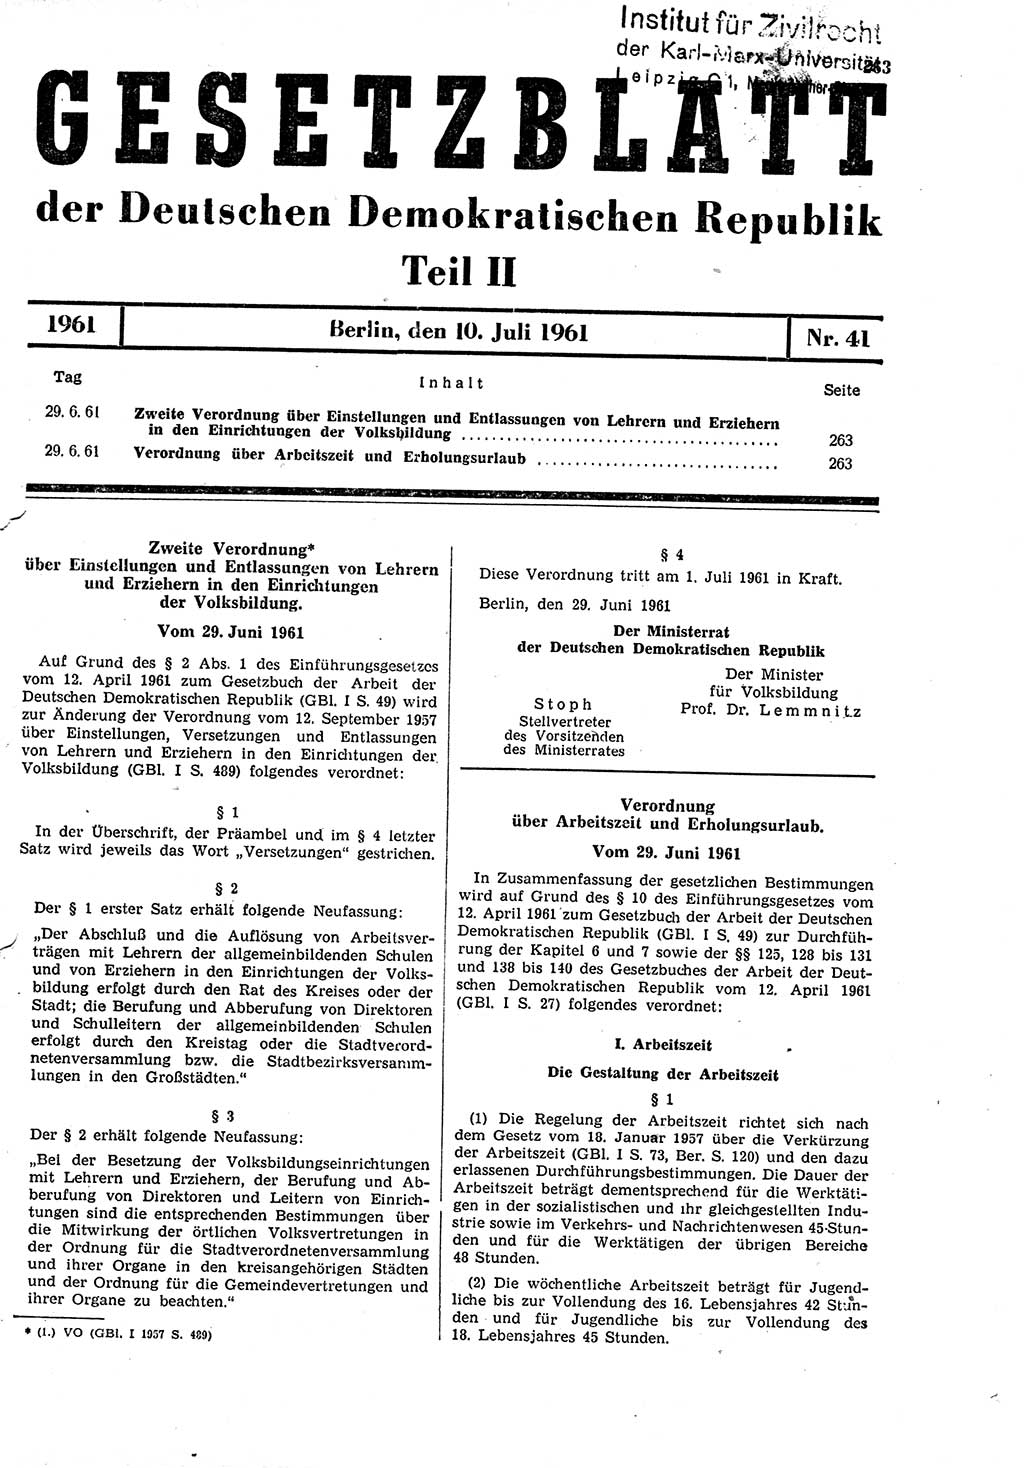 Gesetzblatt (GBl.) der Deutschen Demokratischen Republik (DDR) Teil ⅠⅠ 1961, Seite 263 (GBl. DDR ⅠⅠ 1961, S. 263)